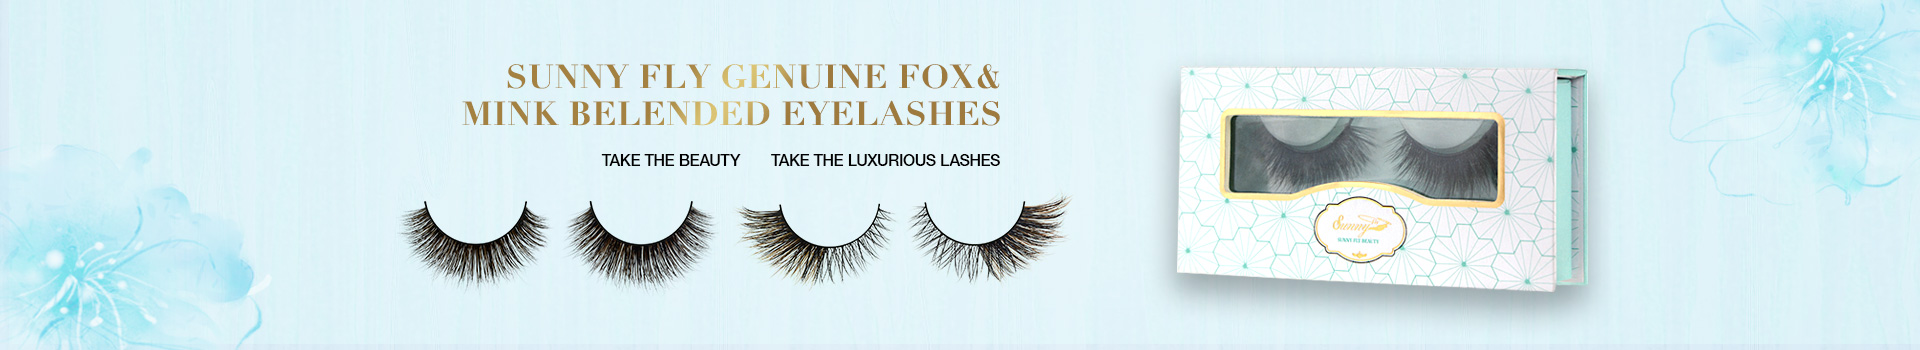 Fox & Mink Fur Blended Eyelashes FMB25